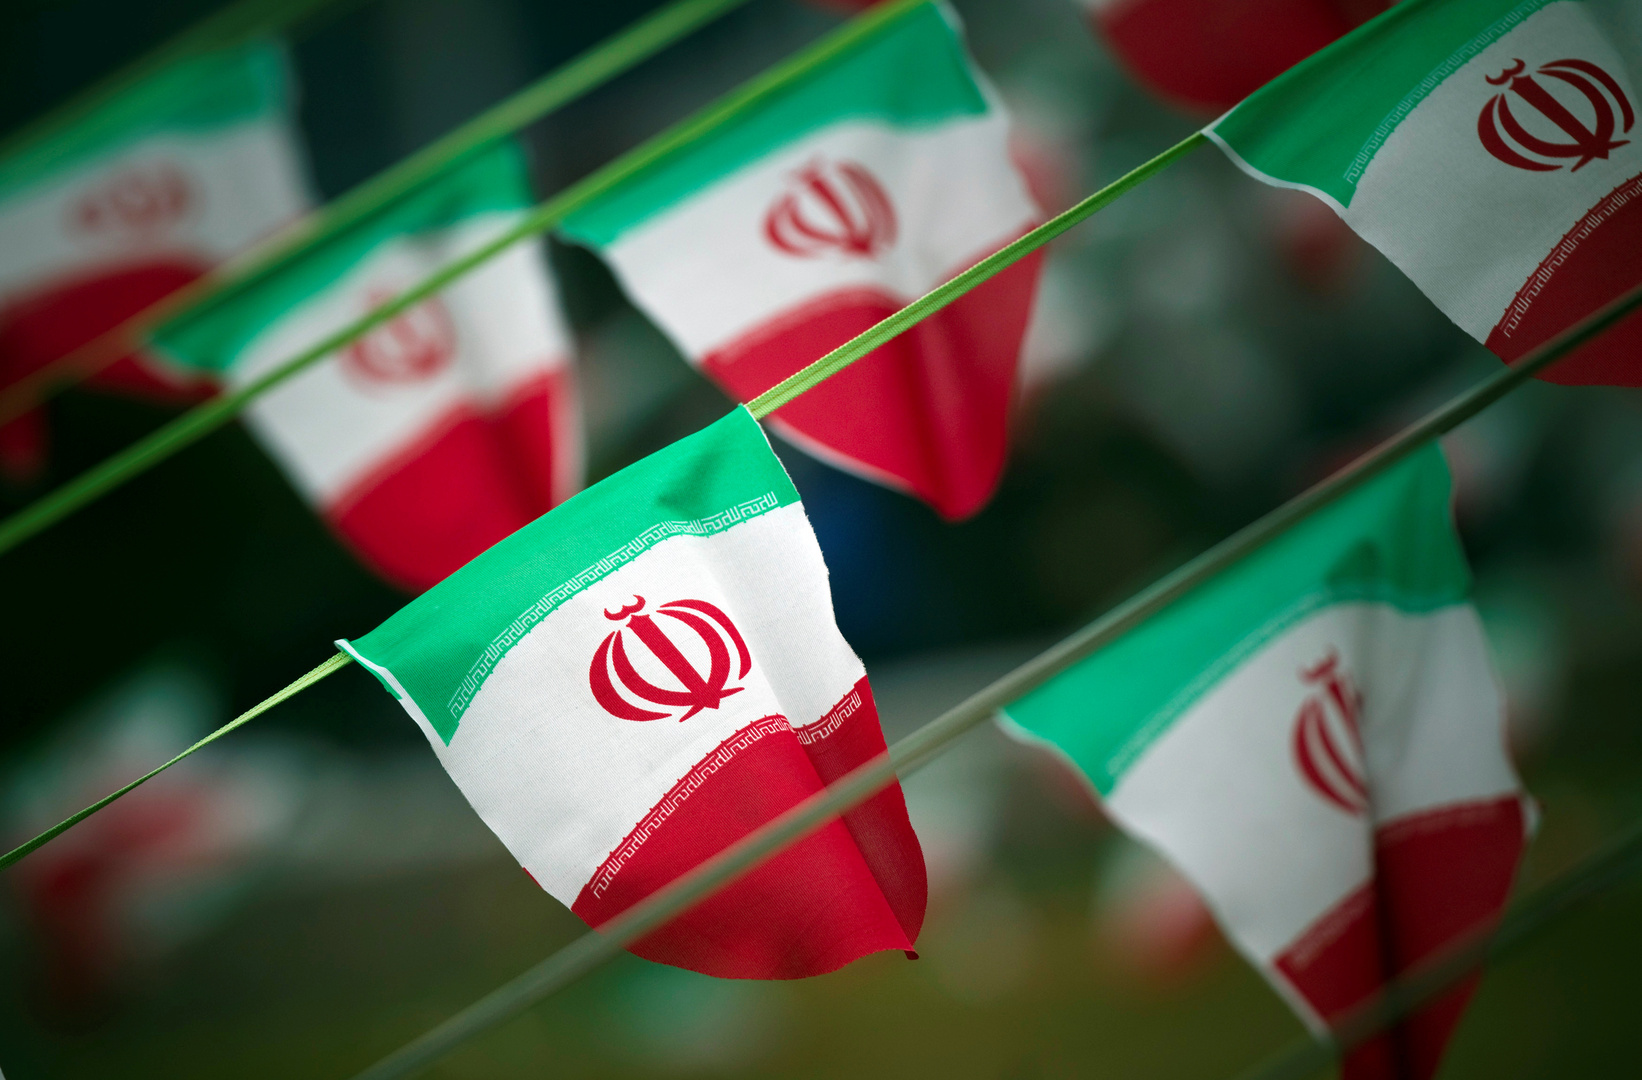 خارجية إيران: اعتراض البرلمان على الاتفاق مع وكالة الطاقة لدولية  غير ضروري والاتفاق نجاح هام